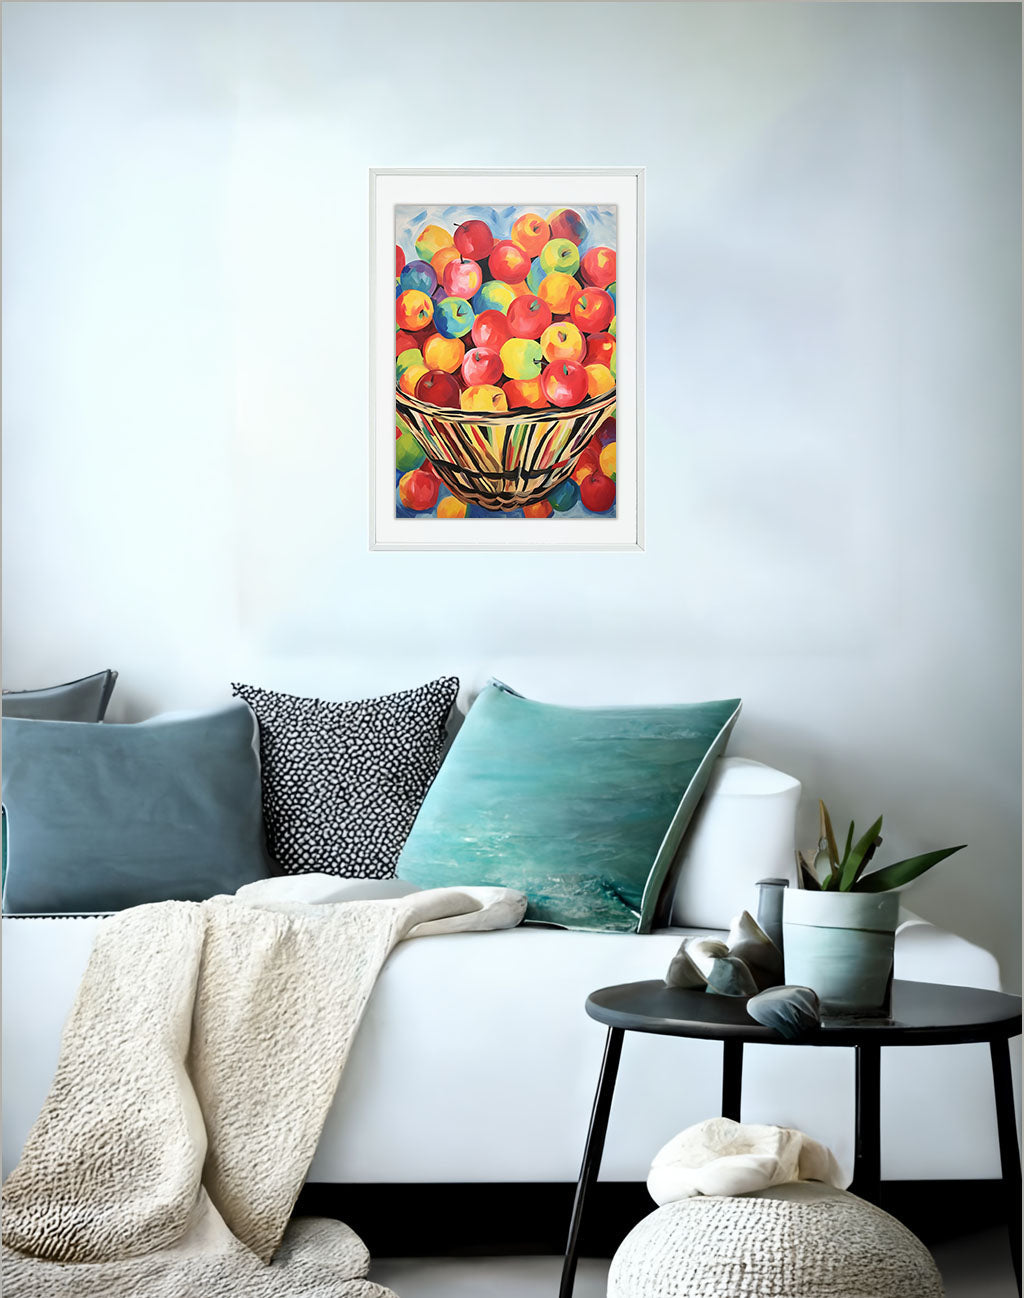 りんごのアートポスター:apple_ba32 / キッチン_フルーツと野菜_のポスター画像ソファ近くに設置したイメージ